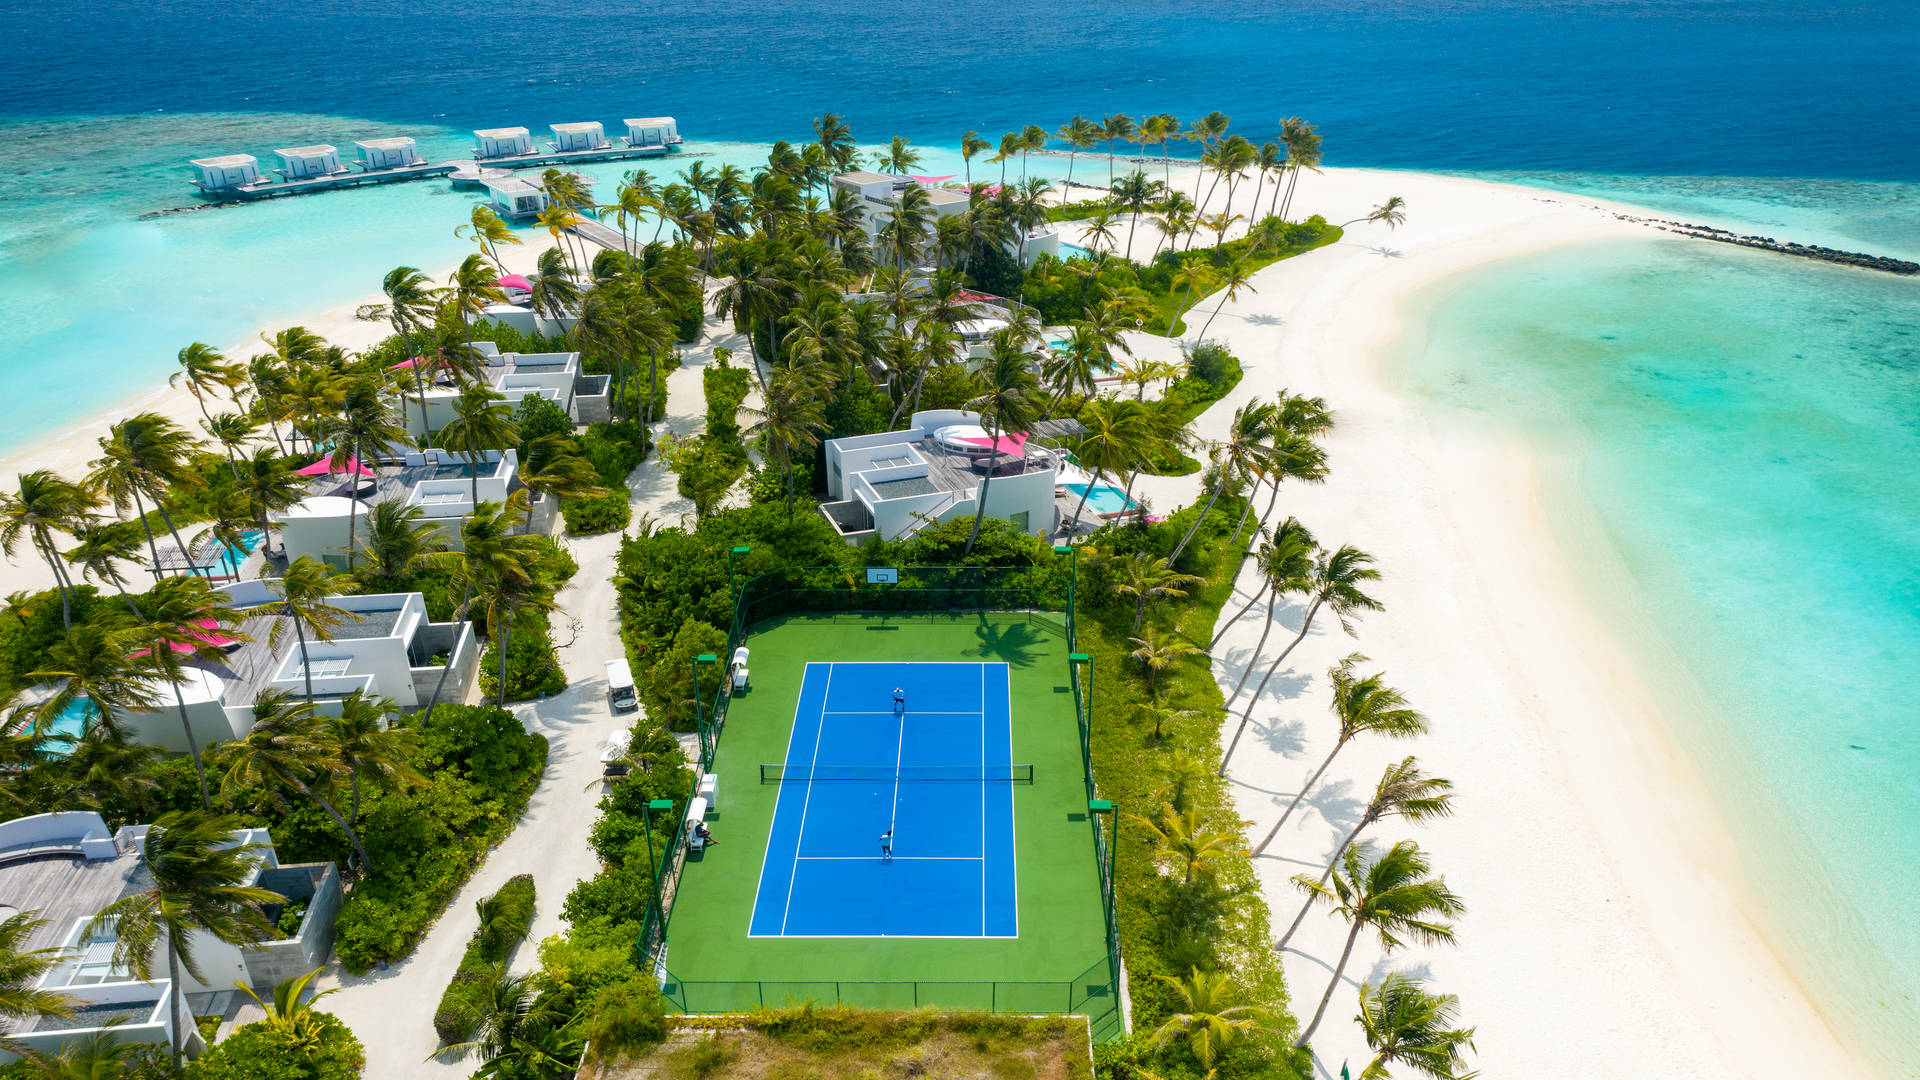 Tennis by the sea at Jumeirah Maldives